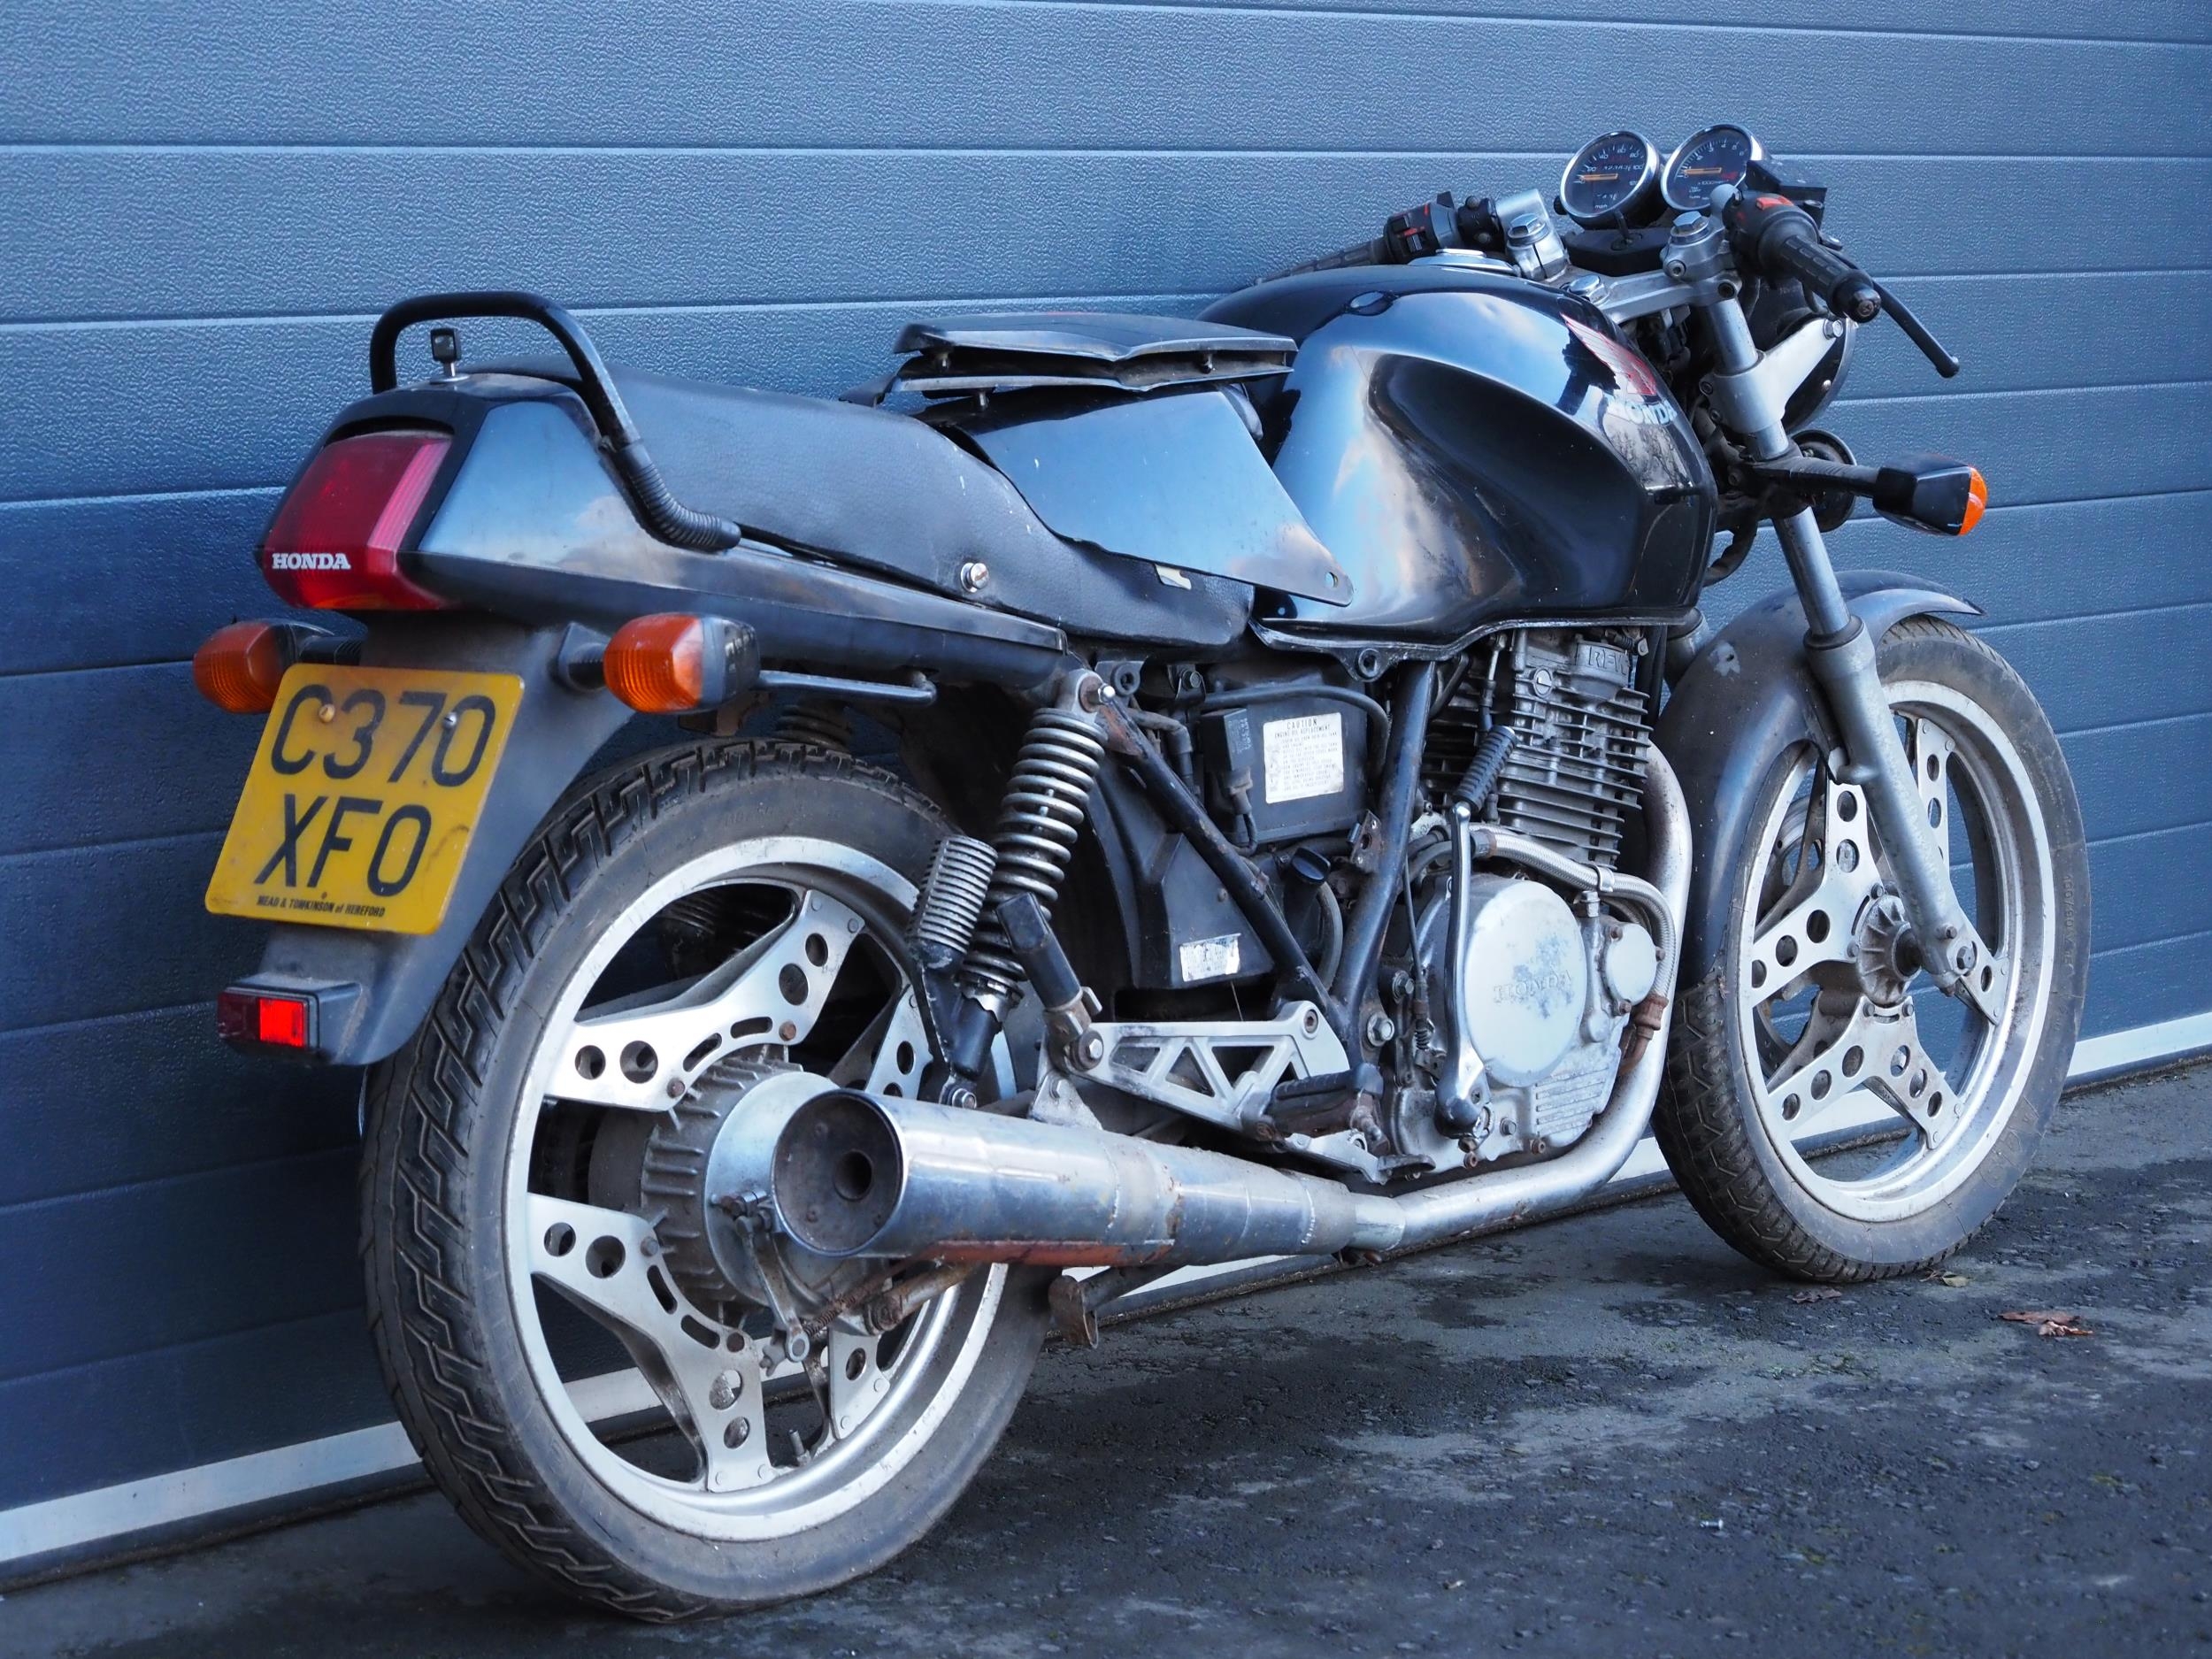 Honda XBR 500 motorcycle. 499cc. 1986 Engine turns over. Reg. C370 XFO. V5. Key - Image 3 of 6